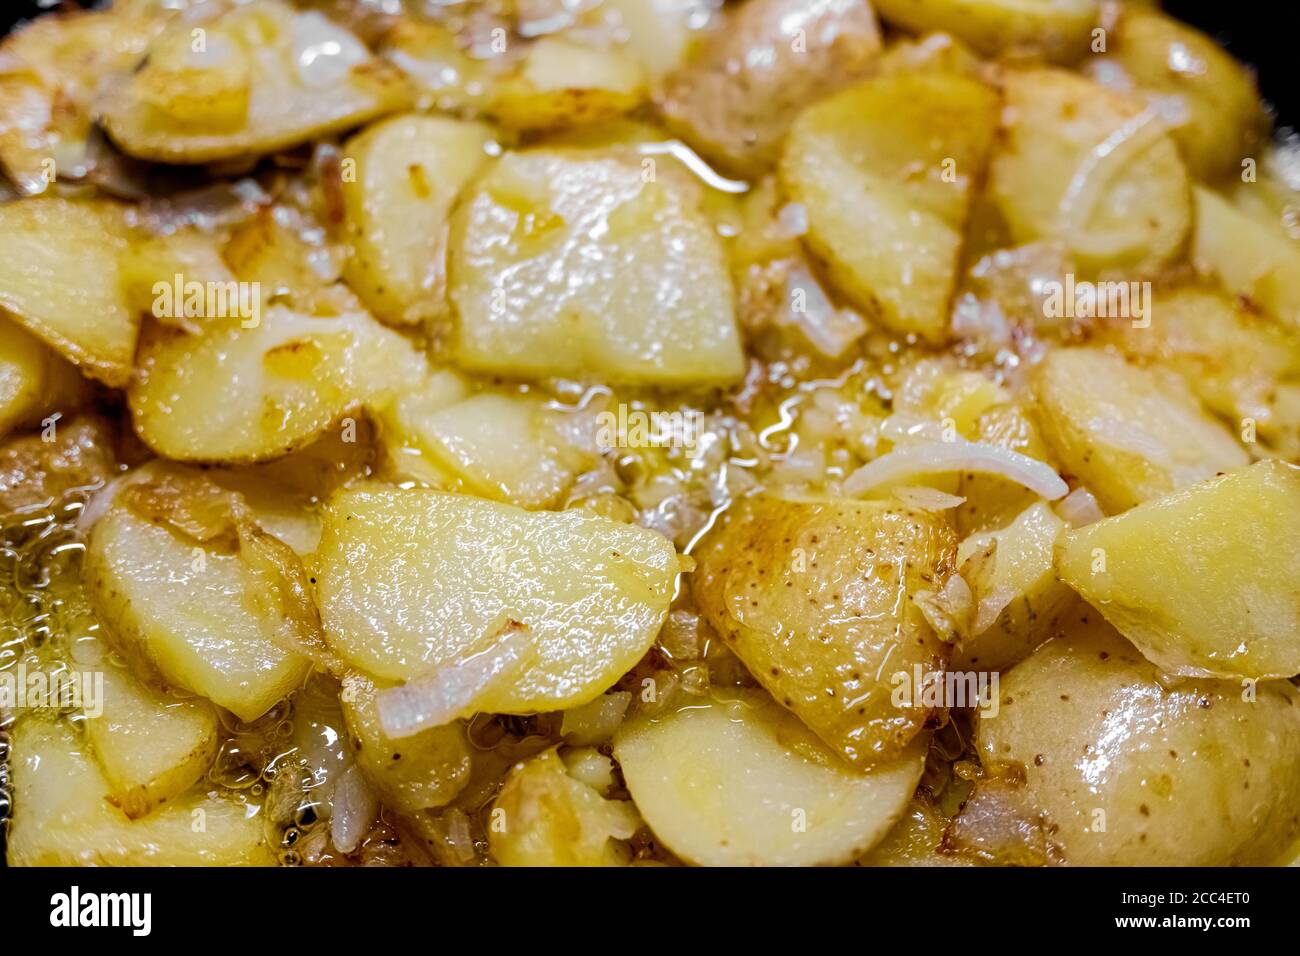 Plat espagnol typique à base de pommes de terre et d'ail, poêlé dans une casserole avec de l'huile d'olive, vu d'en haut Banque D'Images